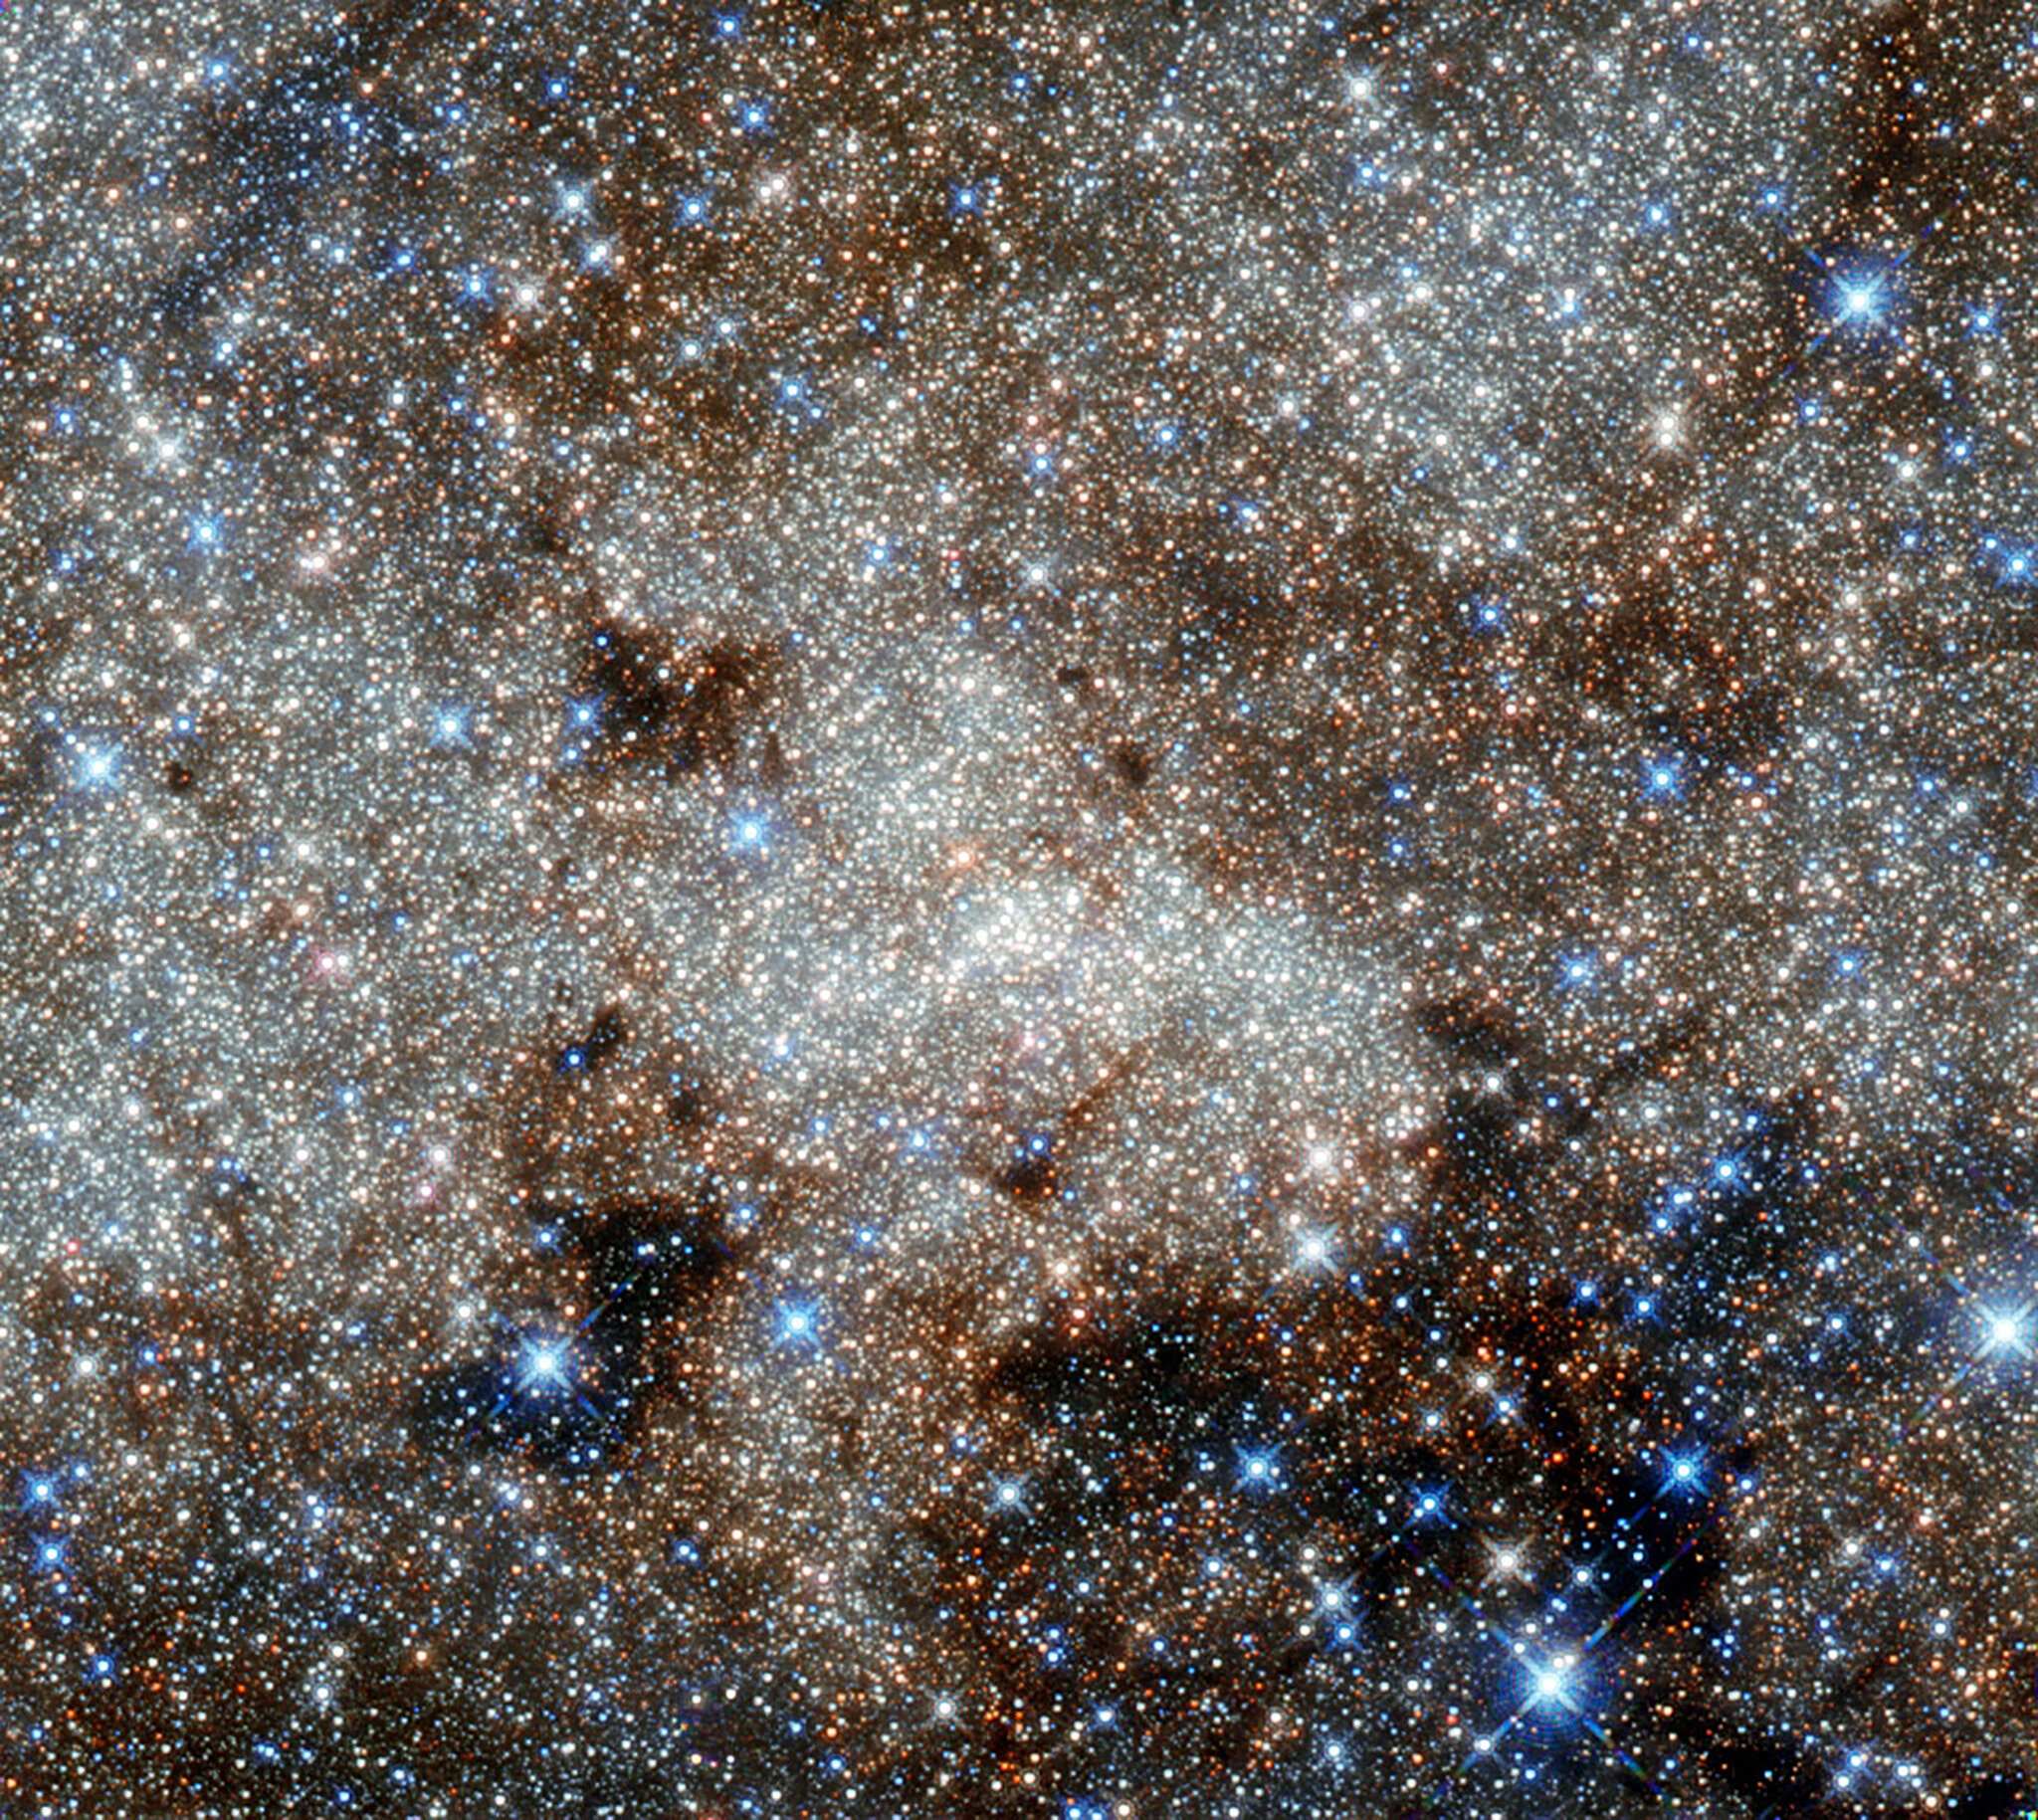 2011年哈勃太空望远镜观测到的银河系中心.图片来源:nasa